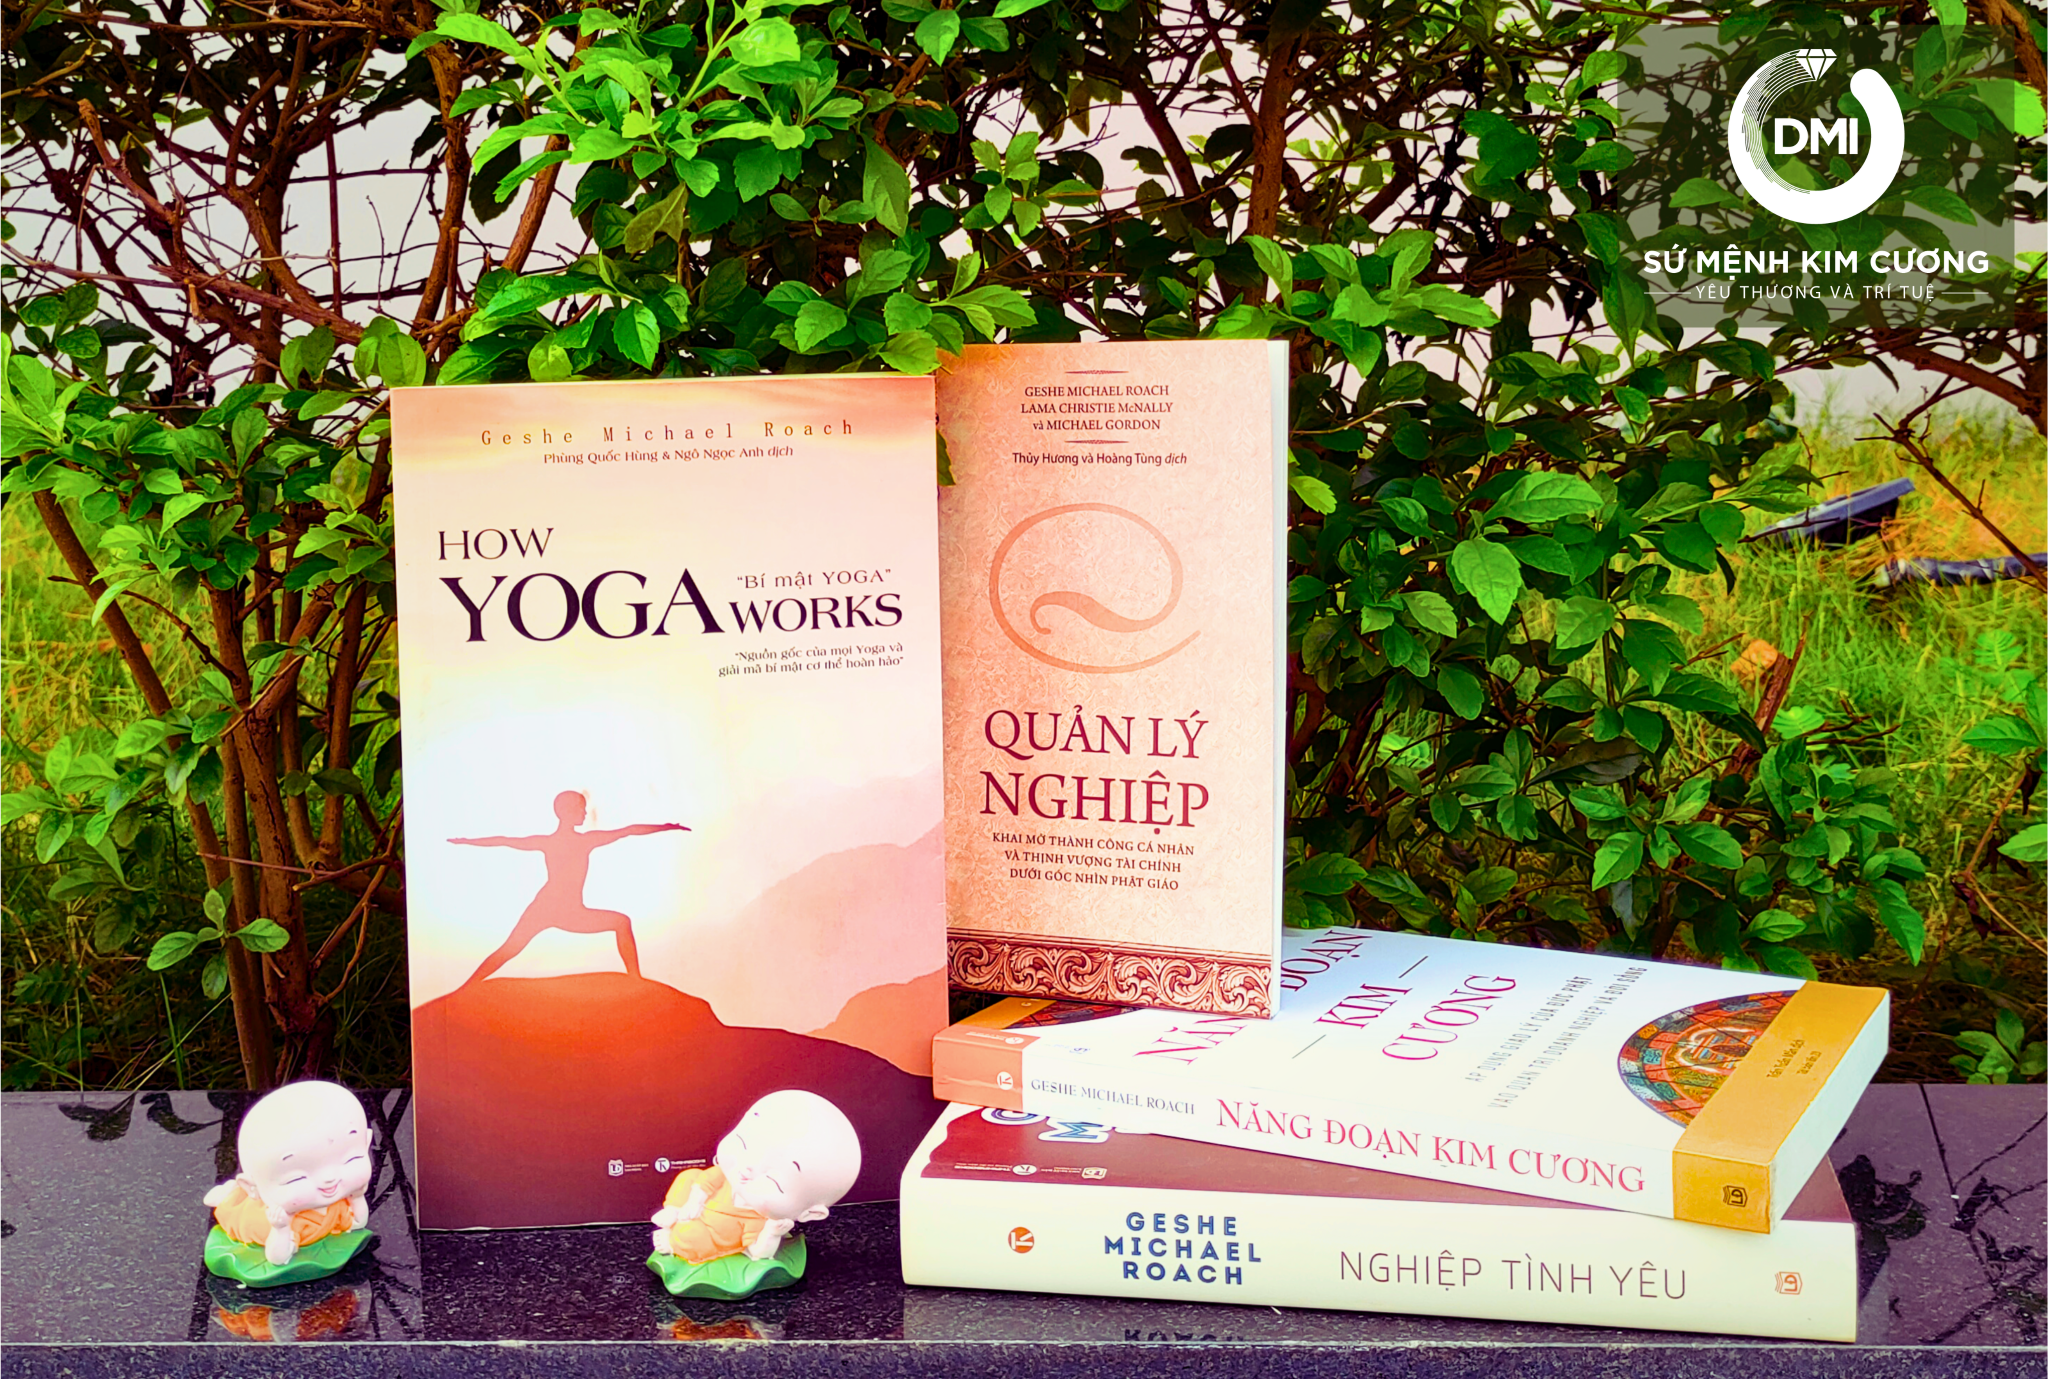 Sách "Bí mật yoga" của Geshe Michael Roach ra mắt độc giả Việt-3